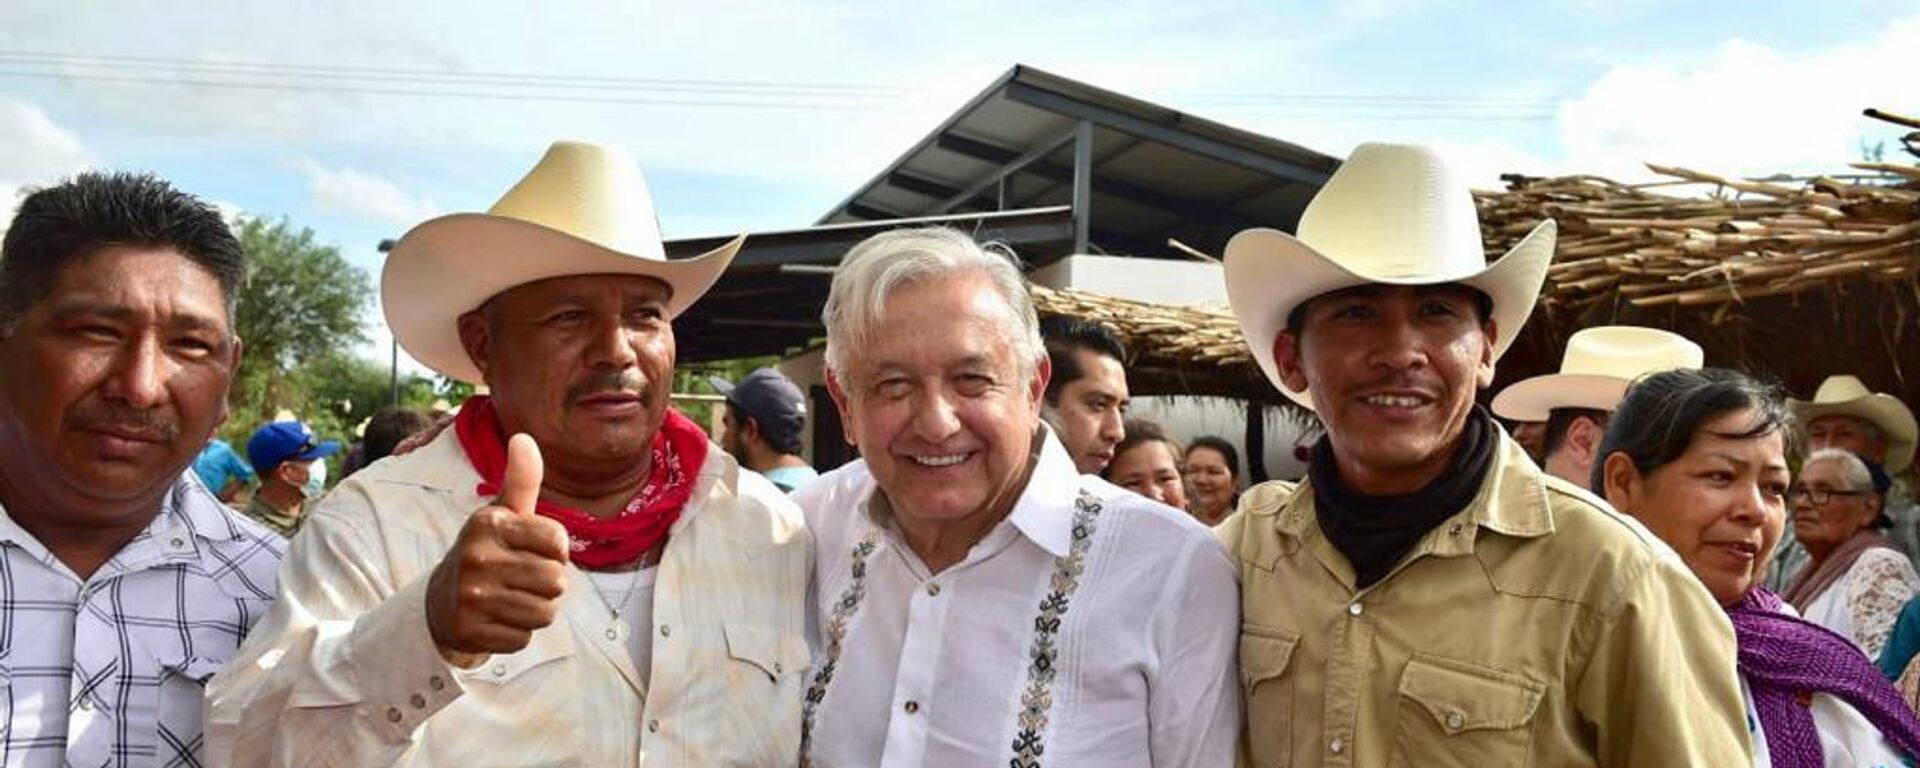 El presidente Andrés Manuel López Obrador reunido con indígenas en Sonora, norte de México. - Sputnik Mundo, 1920, 22.08.2022